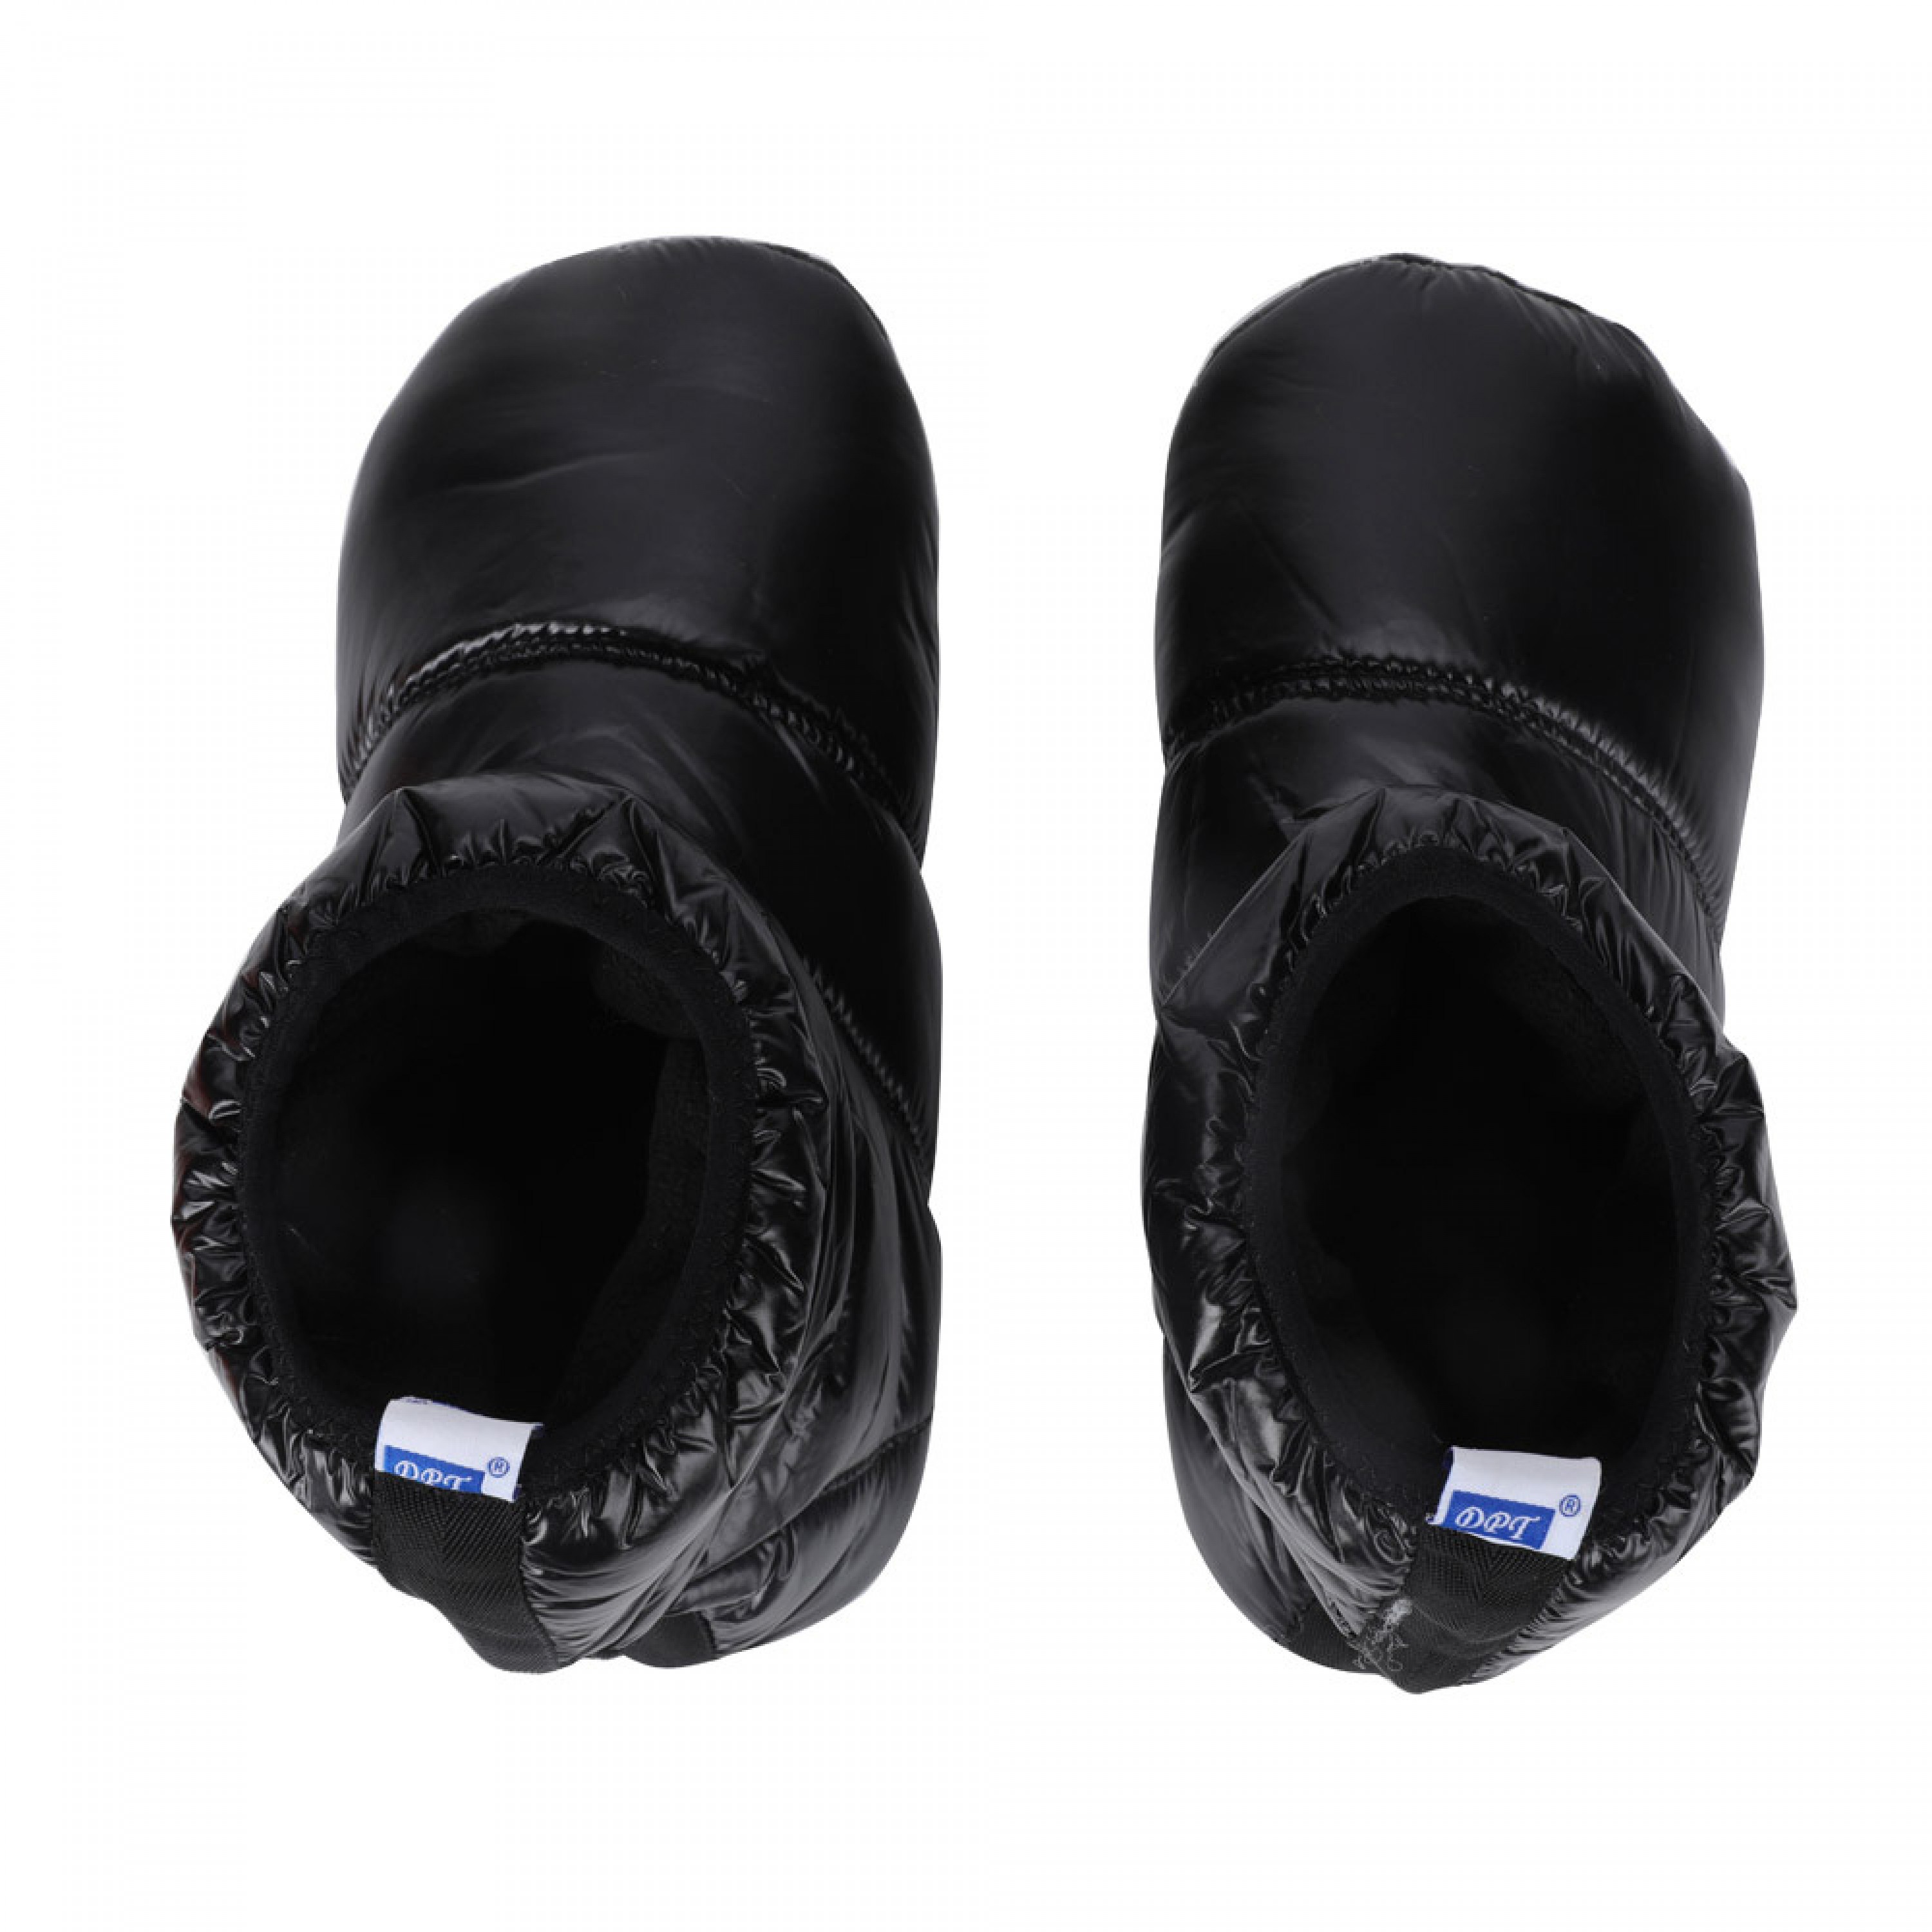 دي بي تي، حذاء تدفئة الاقدام، احذية التخييم والرحلات، اسود، XL